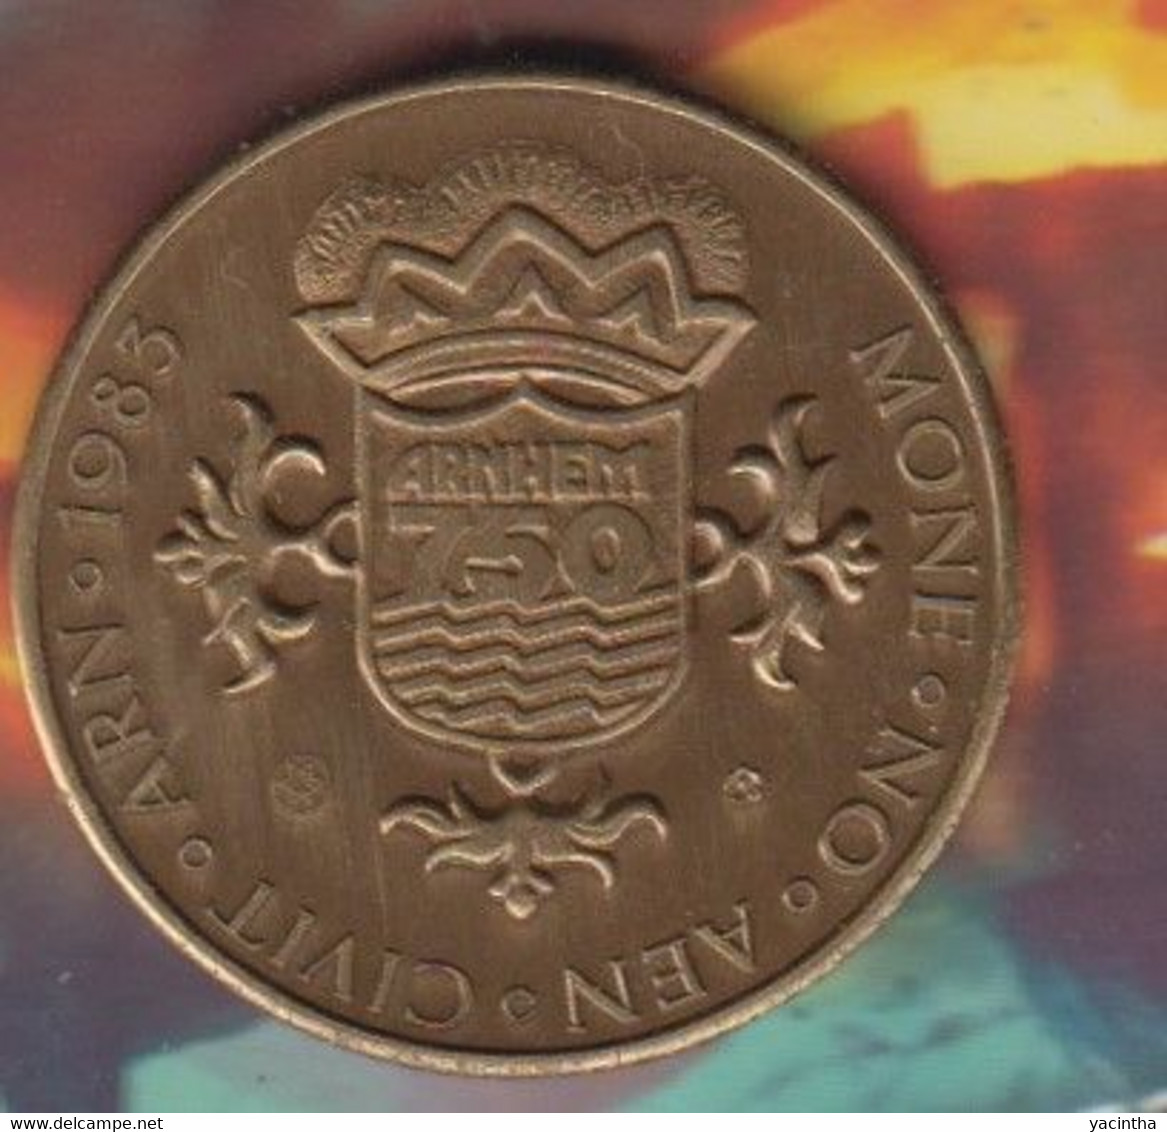 Arnhem  750 Jaar   1233 - 1983  Gele Rijders    (1010) - Elongated Coins